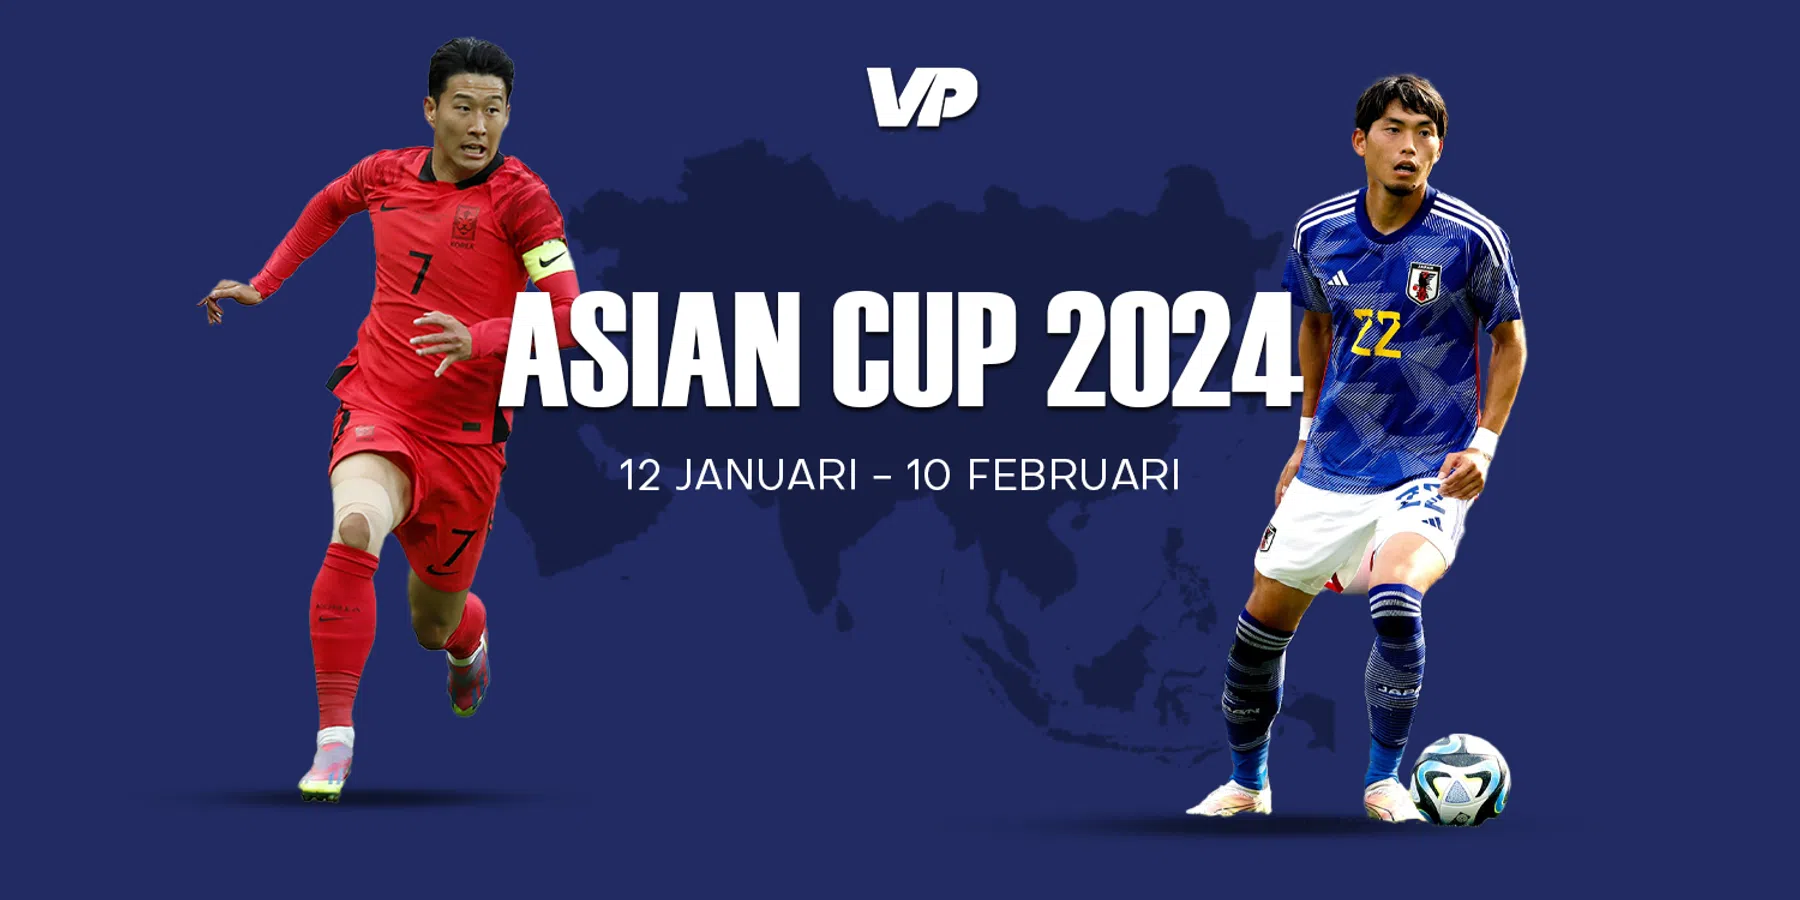 De Asian Cup, een overzicht